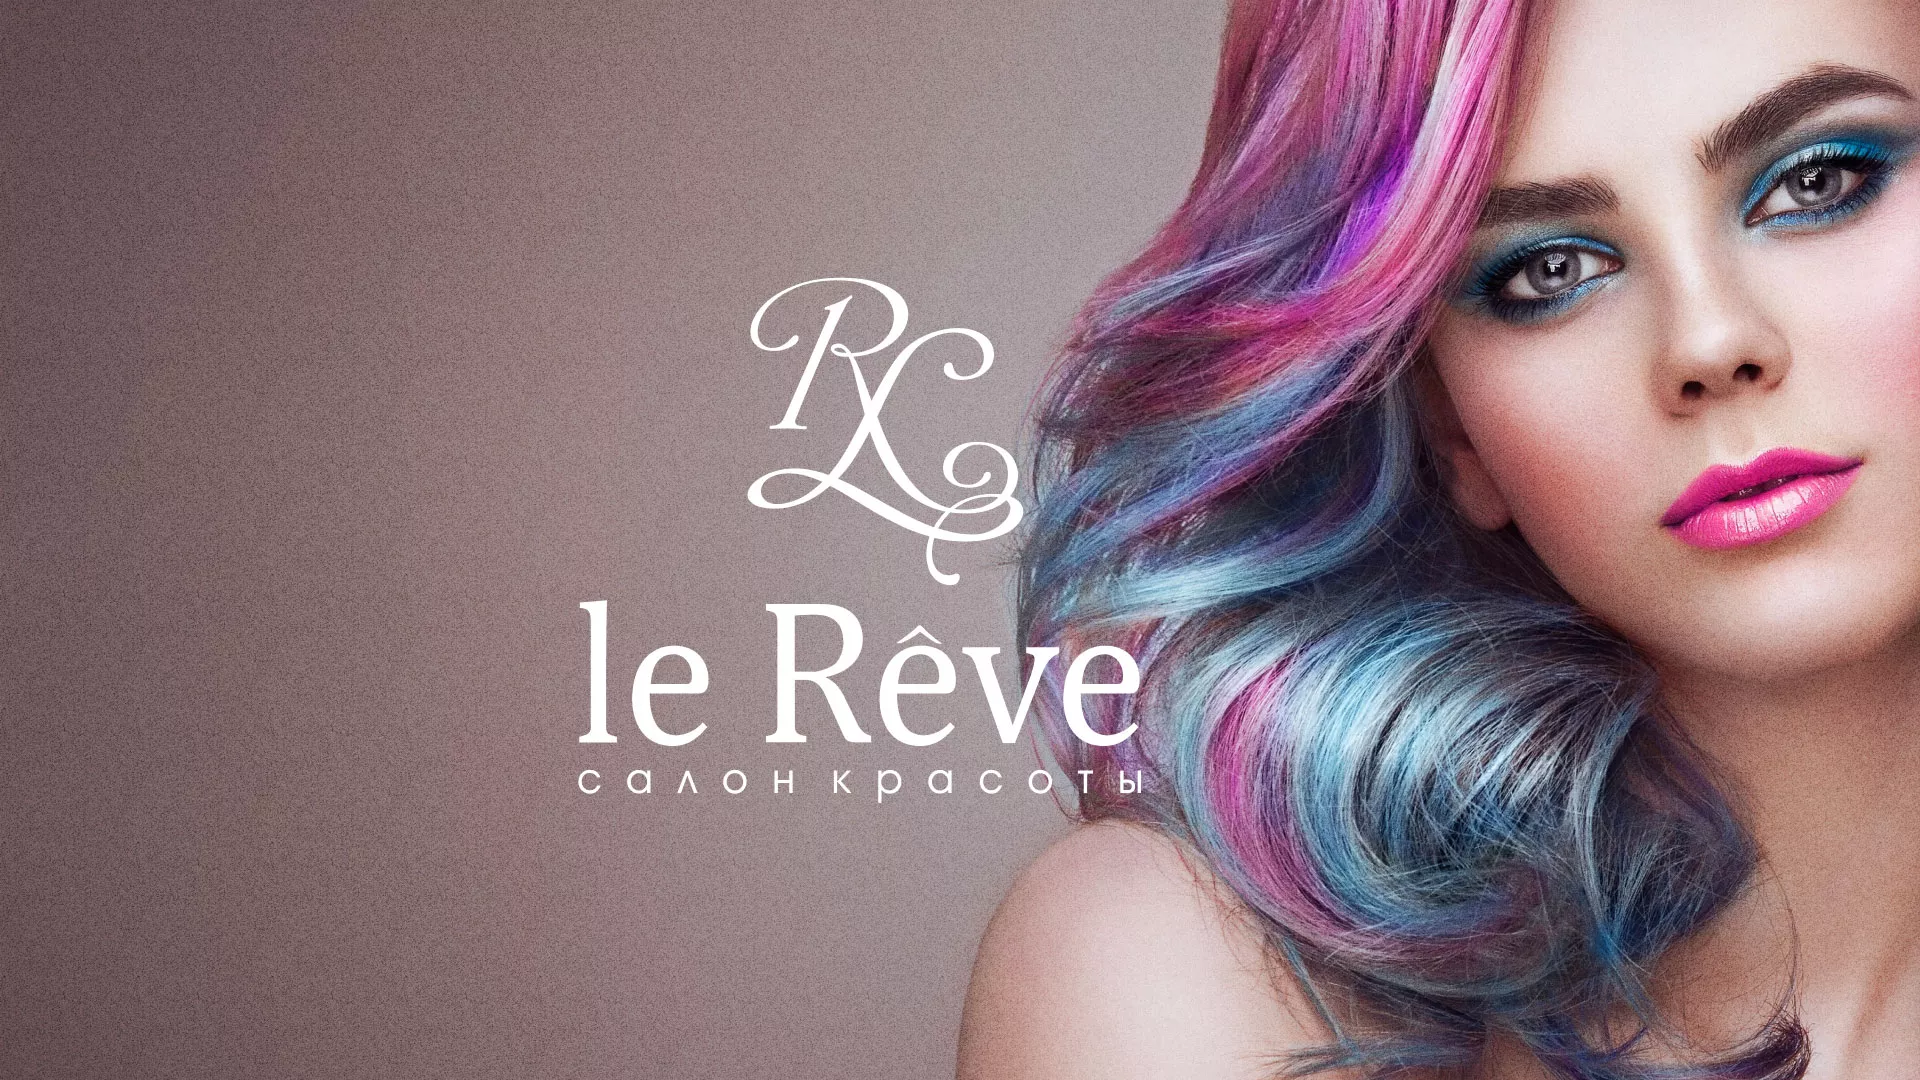 Создание сайта для салона красоты «Le Reve» в Пушкино